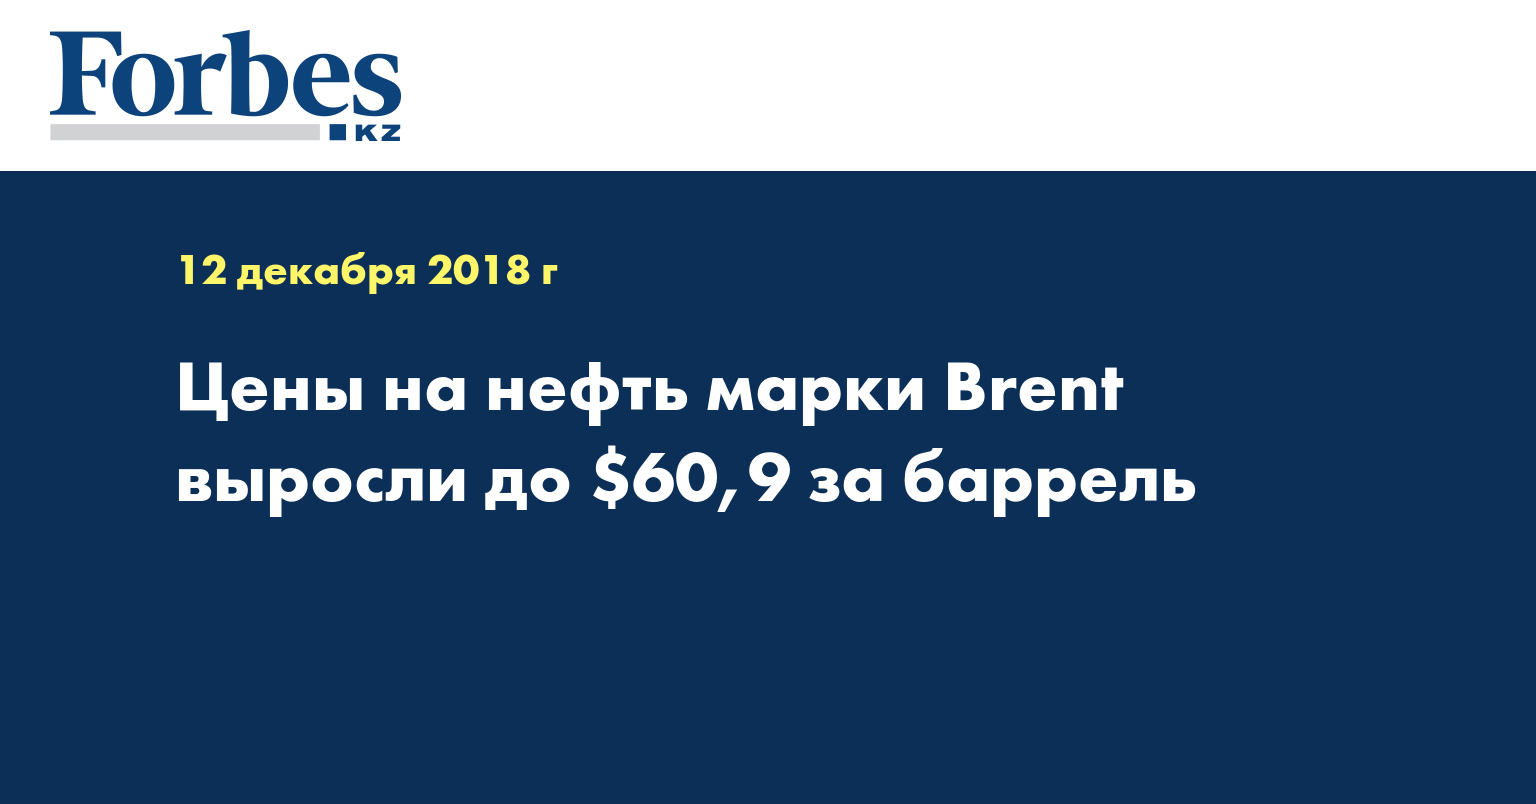 Цены на нефть марки Brent выросли до $60,9 за баррель